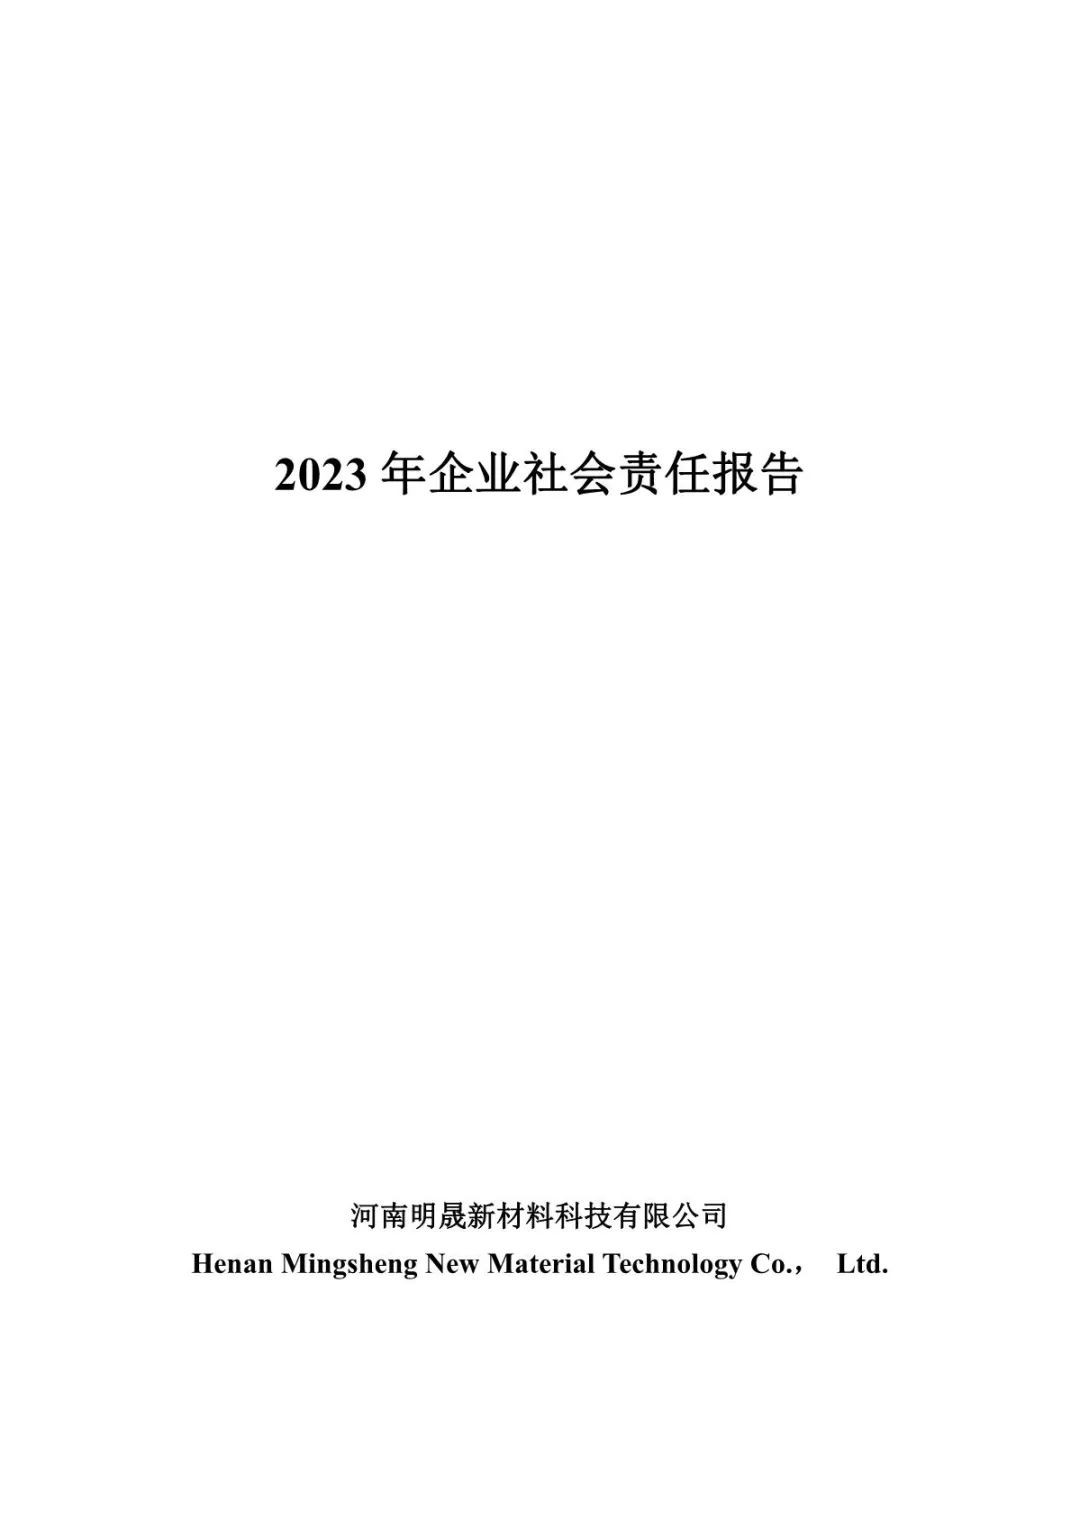 我司子公司明晟新材料-2022年企业社会责任报告